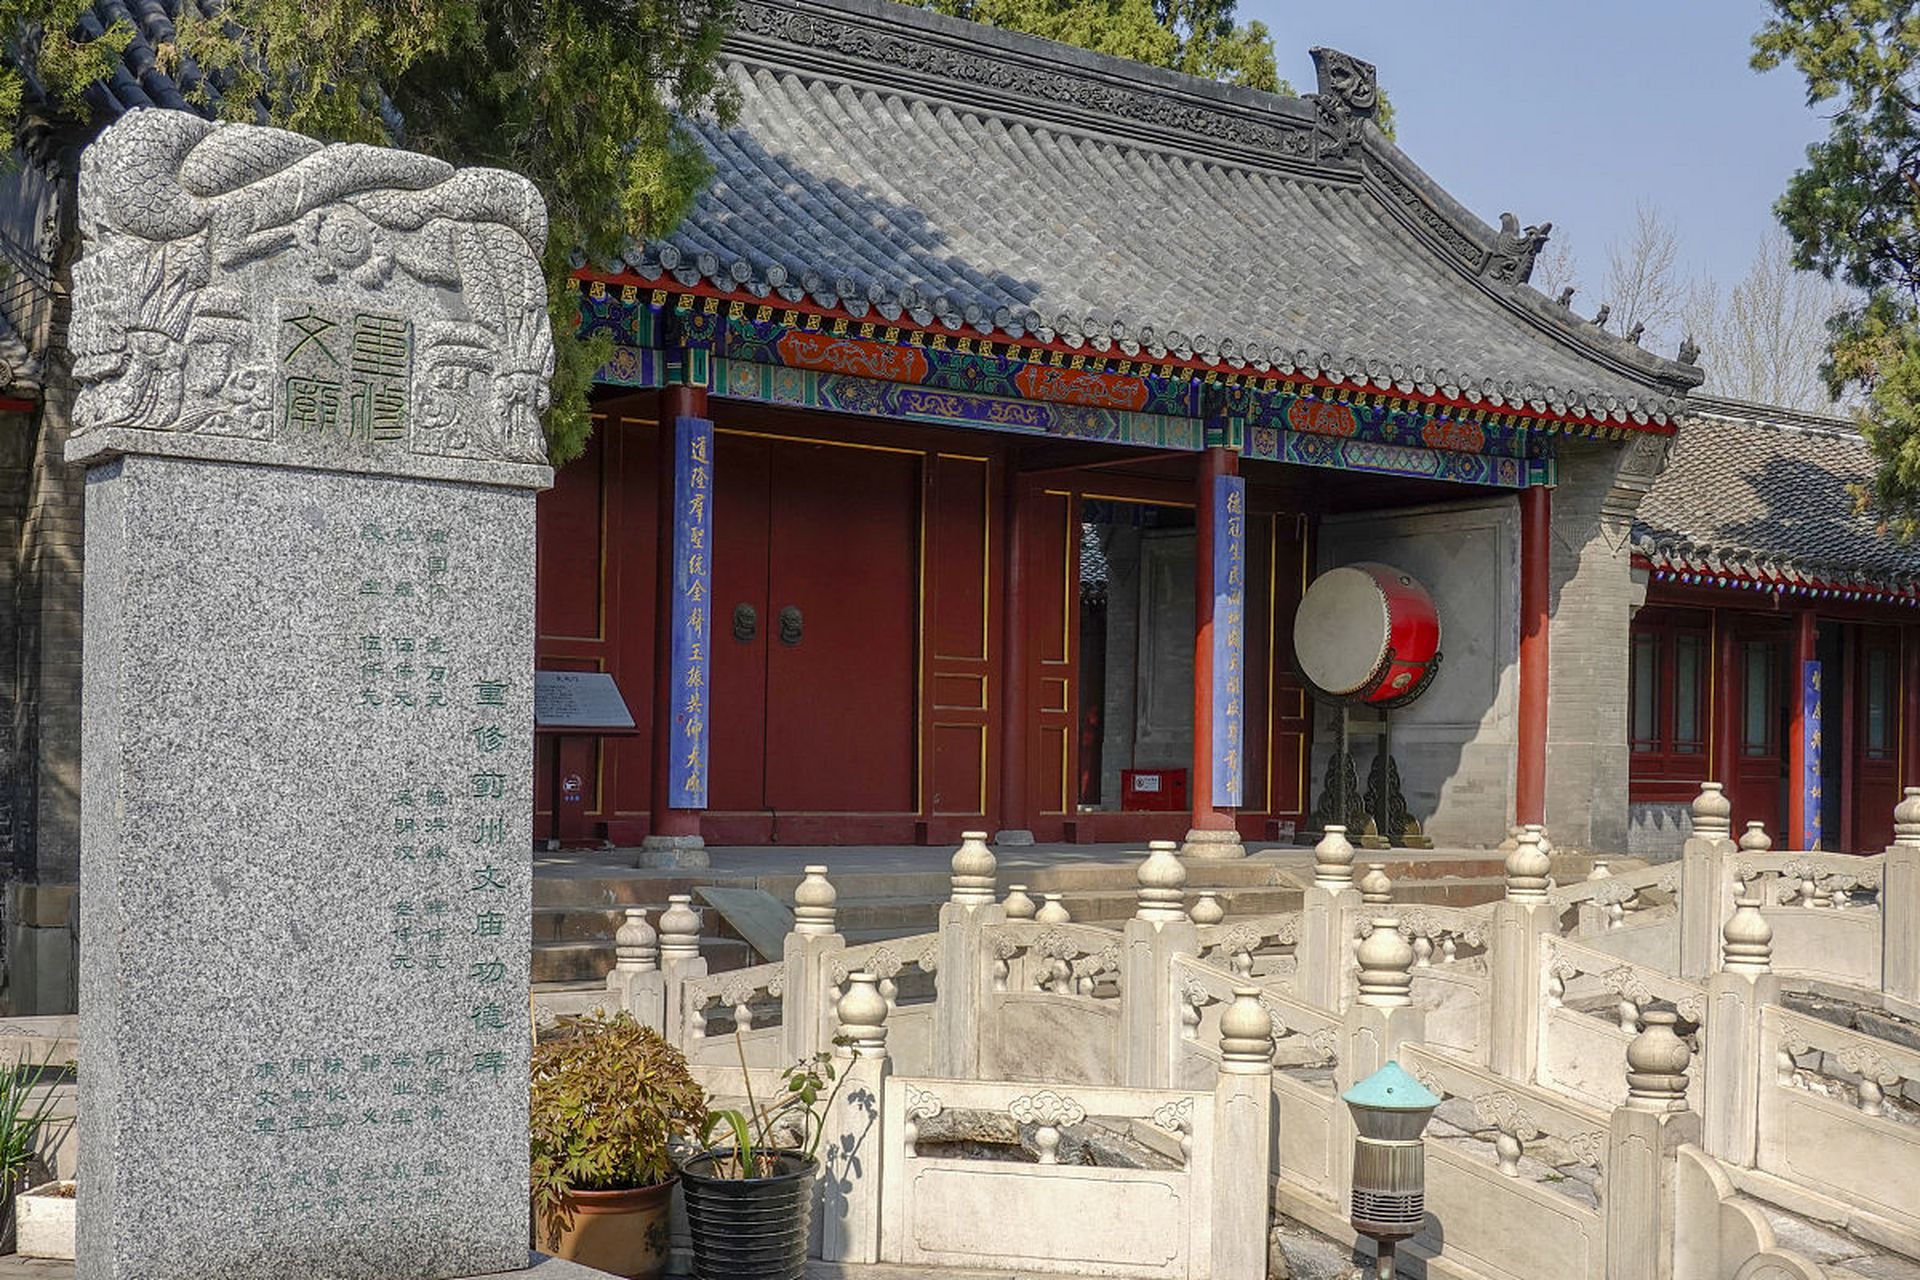 说到天津的旅游景点,蓟州文庙可是个不能错过的好地方!